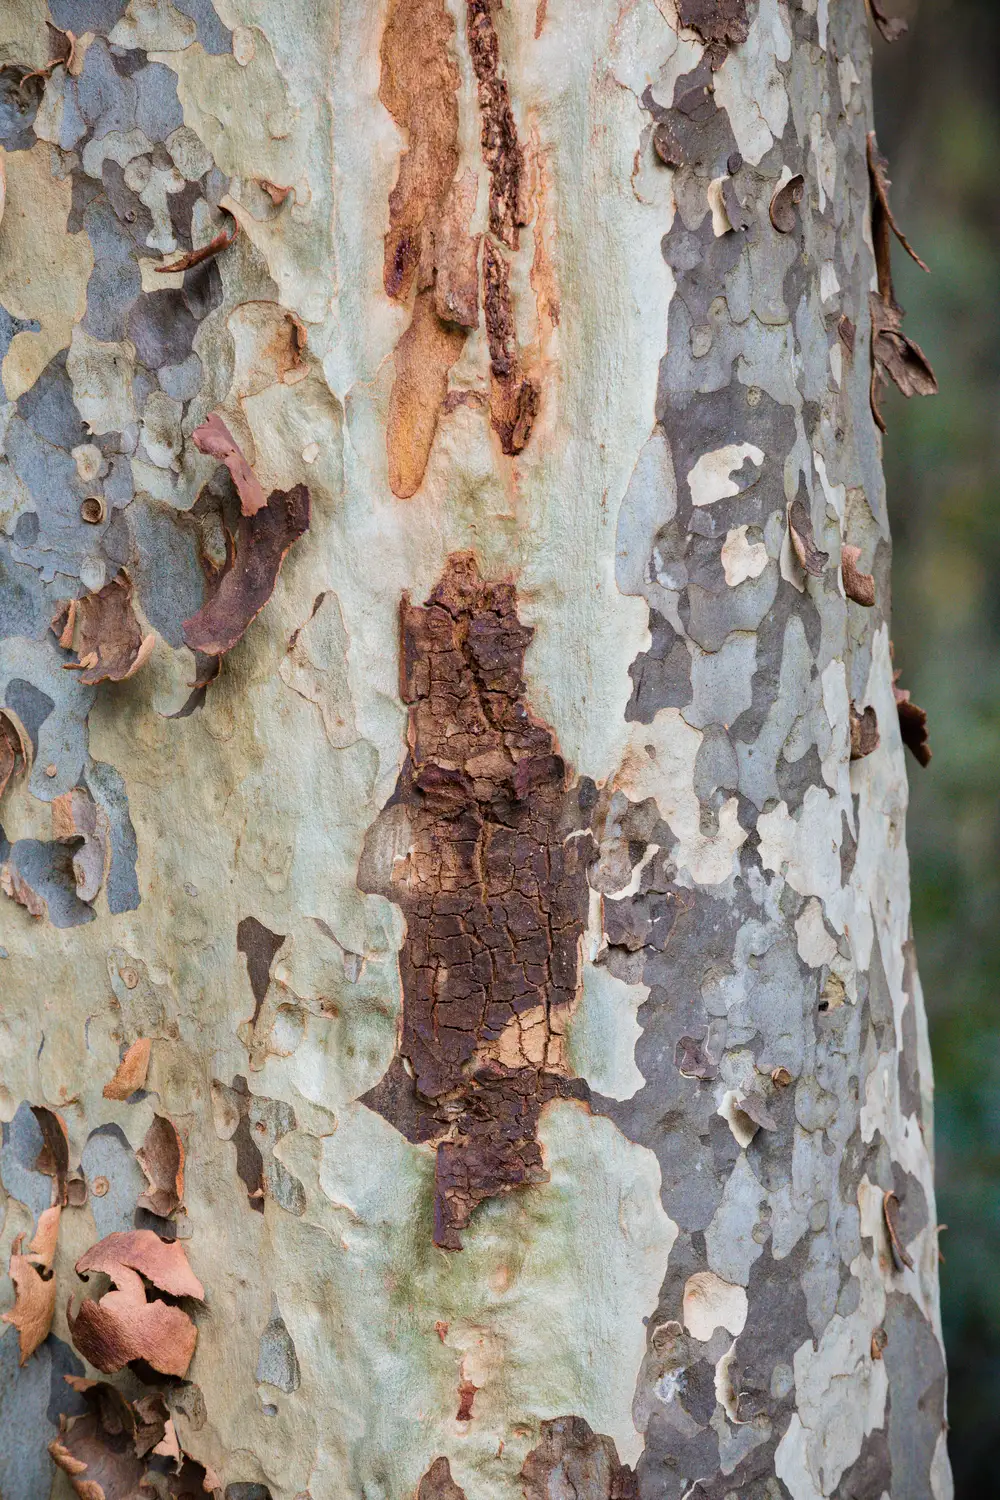 Sycamore tree bark